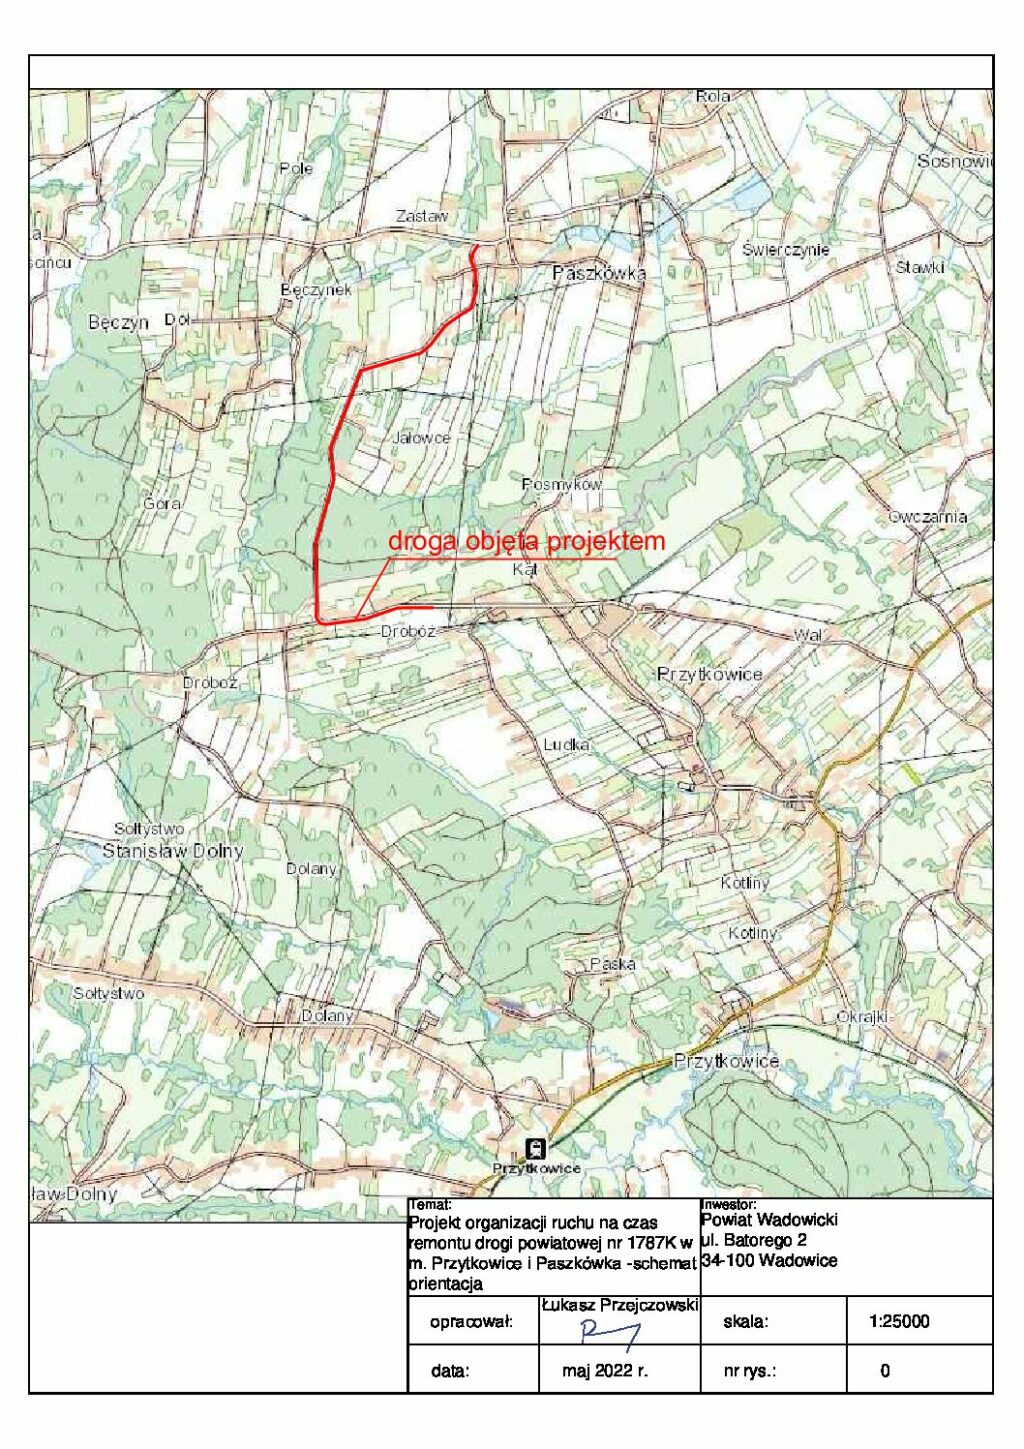 Informacja o zamknięciu drogi powiatowej nr 1787K w m. miejscowości Przytkowice